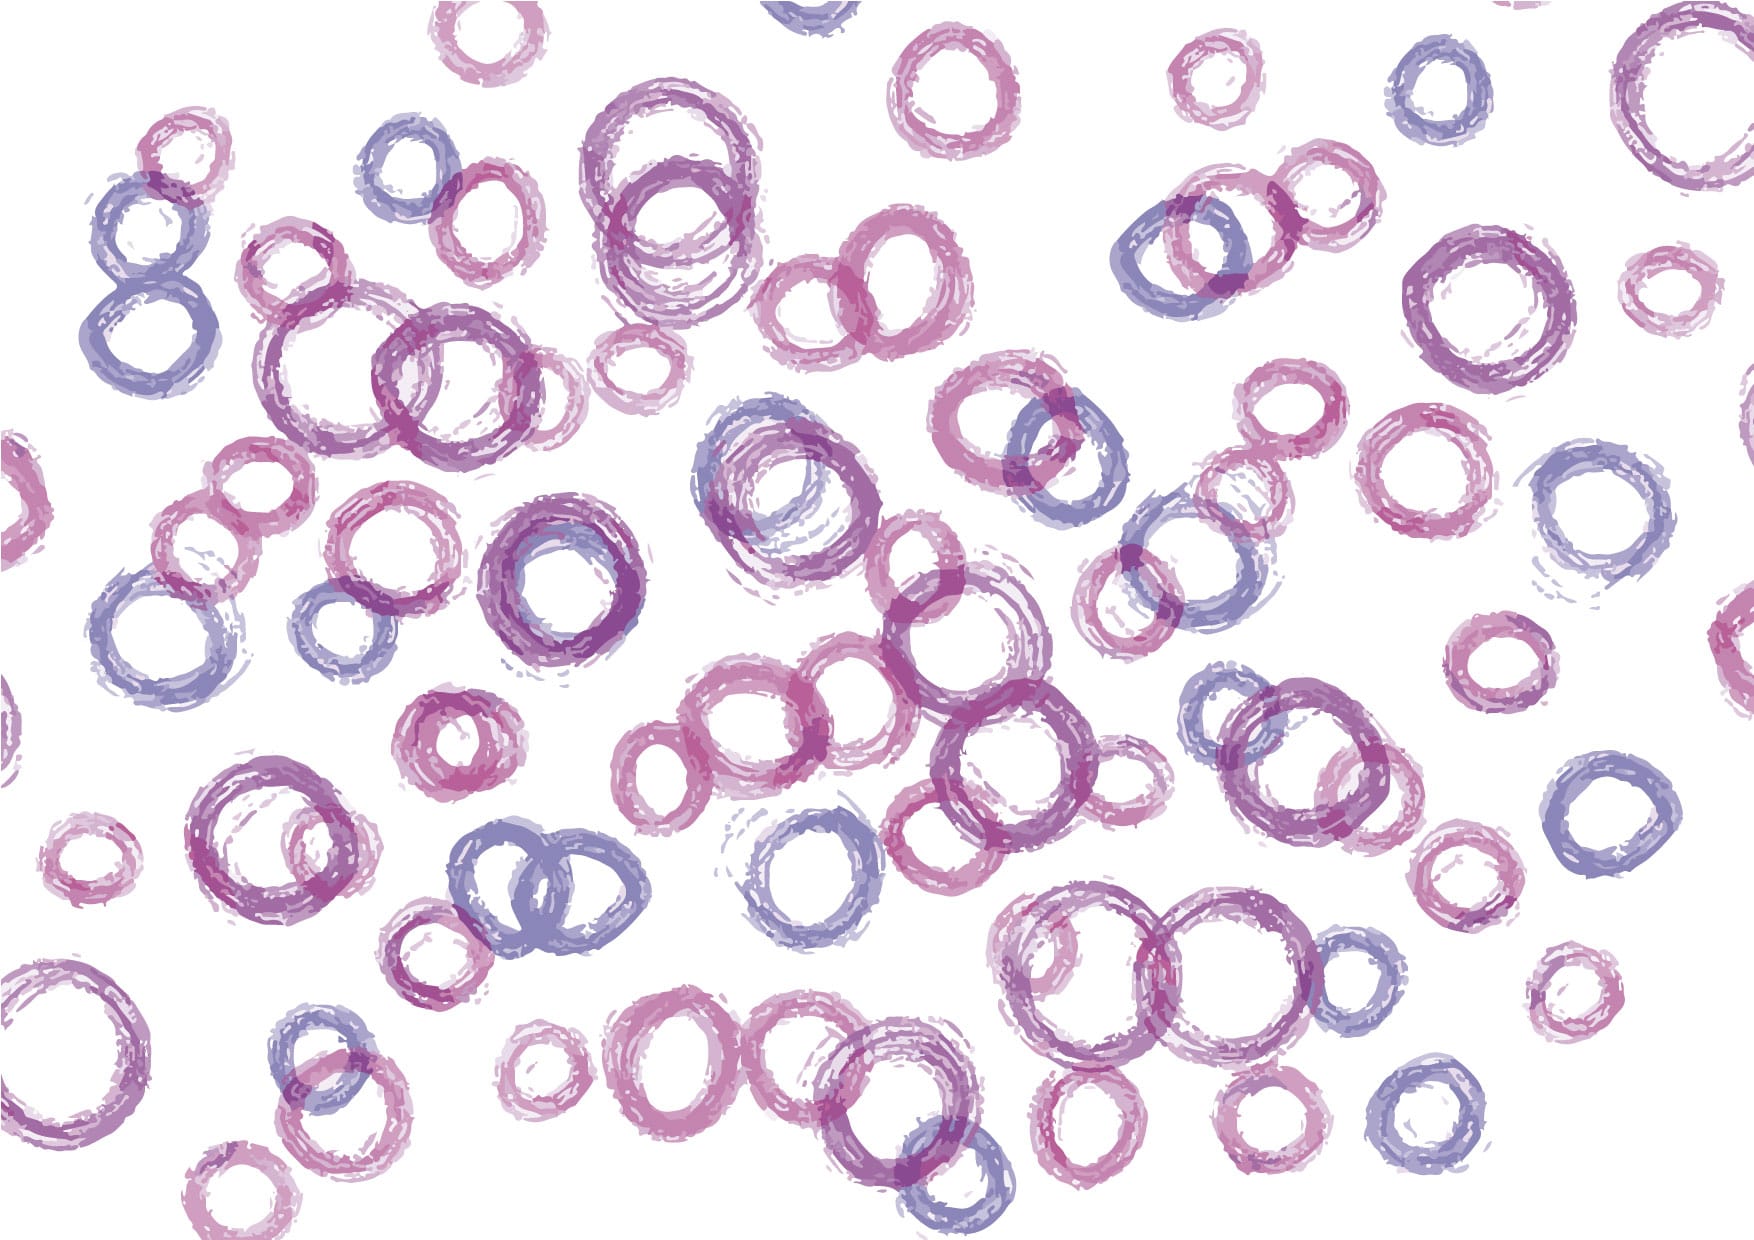 可愛いイラスト無料 手書き 泡 紫色 背景 Free Illustration Handwritten Bubble Purple Background 公式 イラスト素材サイト イラストダウンロード